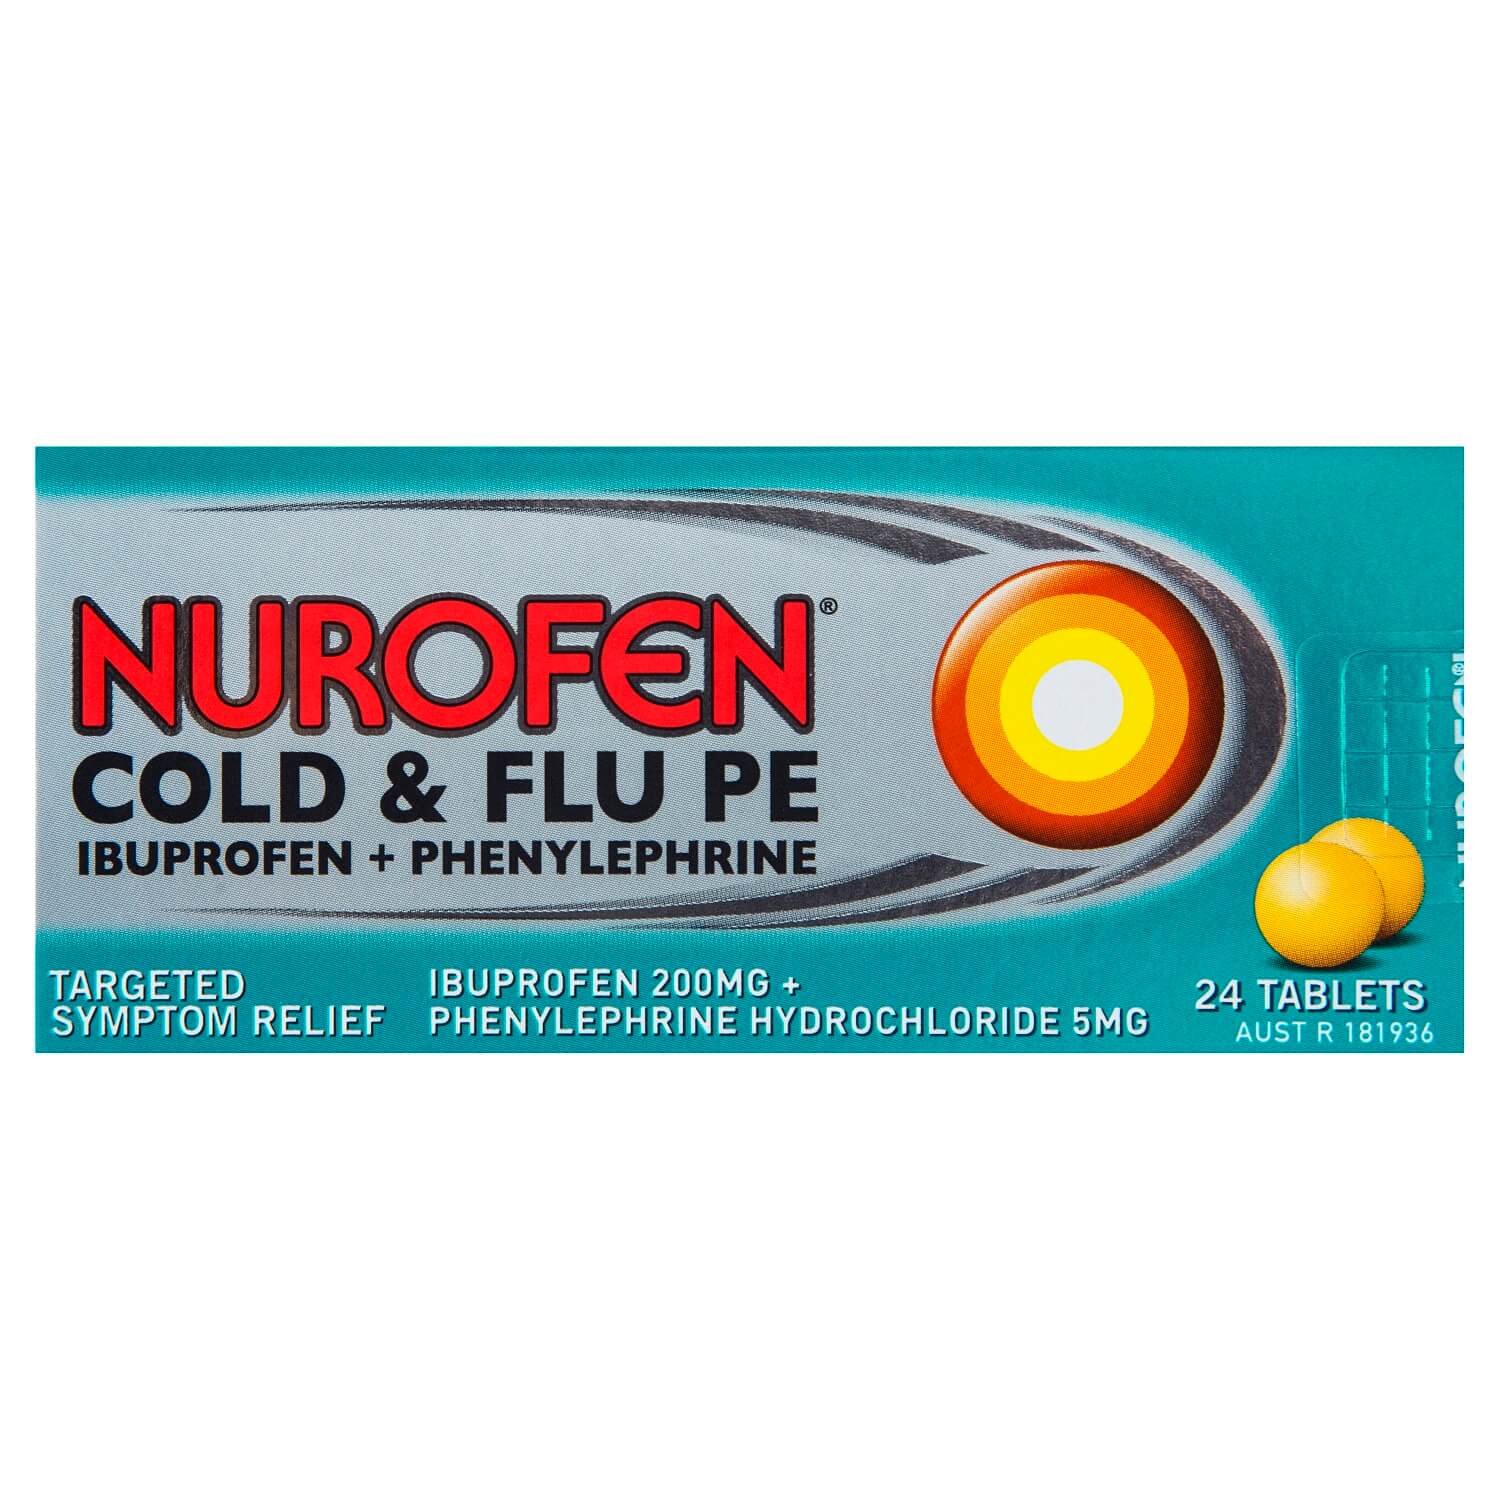 nurofen-cold-flu-pe-cold-flu-tablets-nurofen-australia